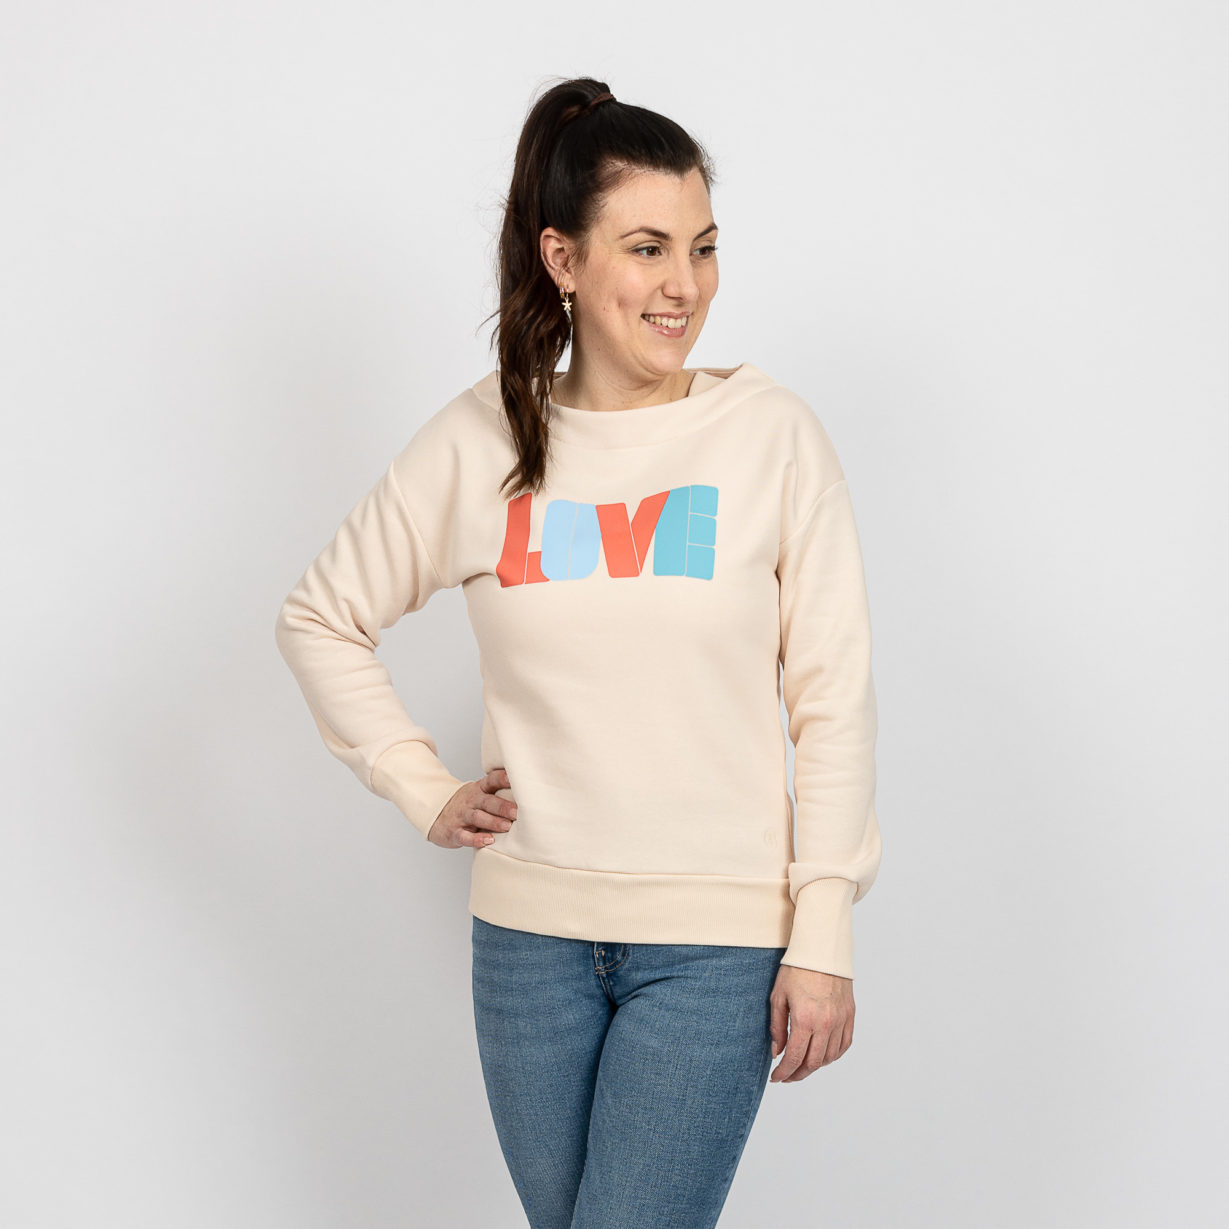 Kulóóntje - Sweatshirt mit Boatneckkragen und LOVE Print Vorn Model